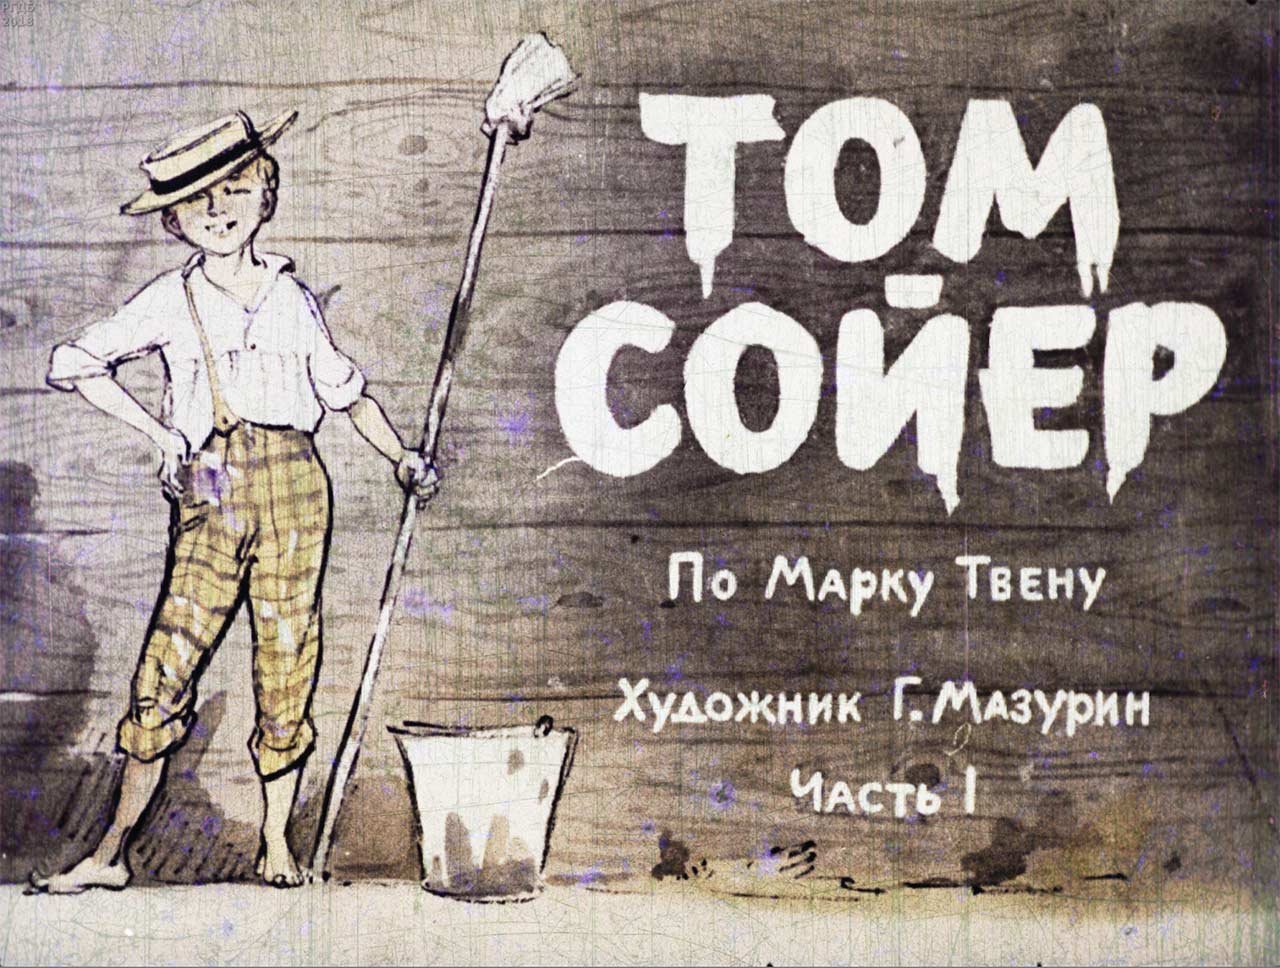 1 часть тома сойера. Диафильм приключения Тома Сойера. Том Сойер великолепный маляр. Том Сойер иллюстрации к книге.